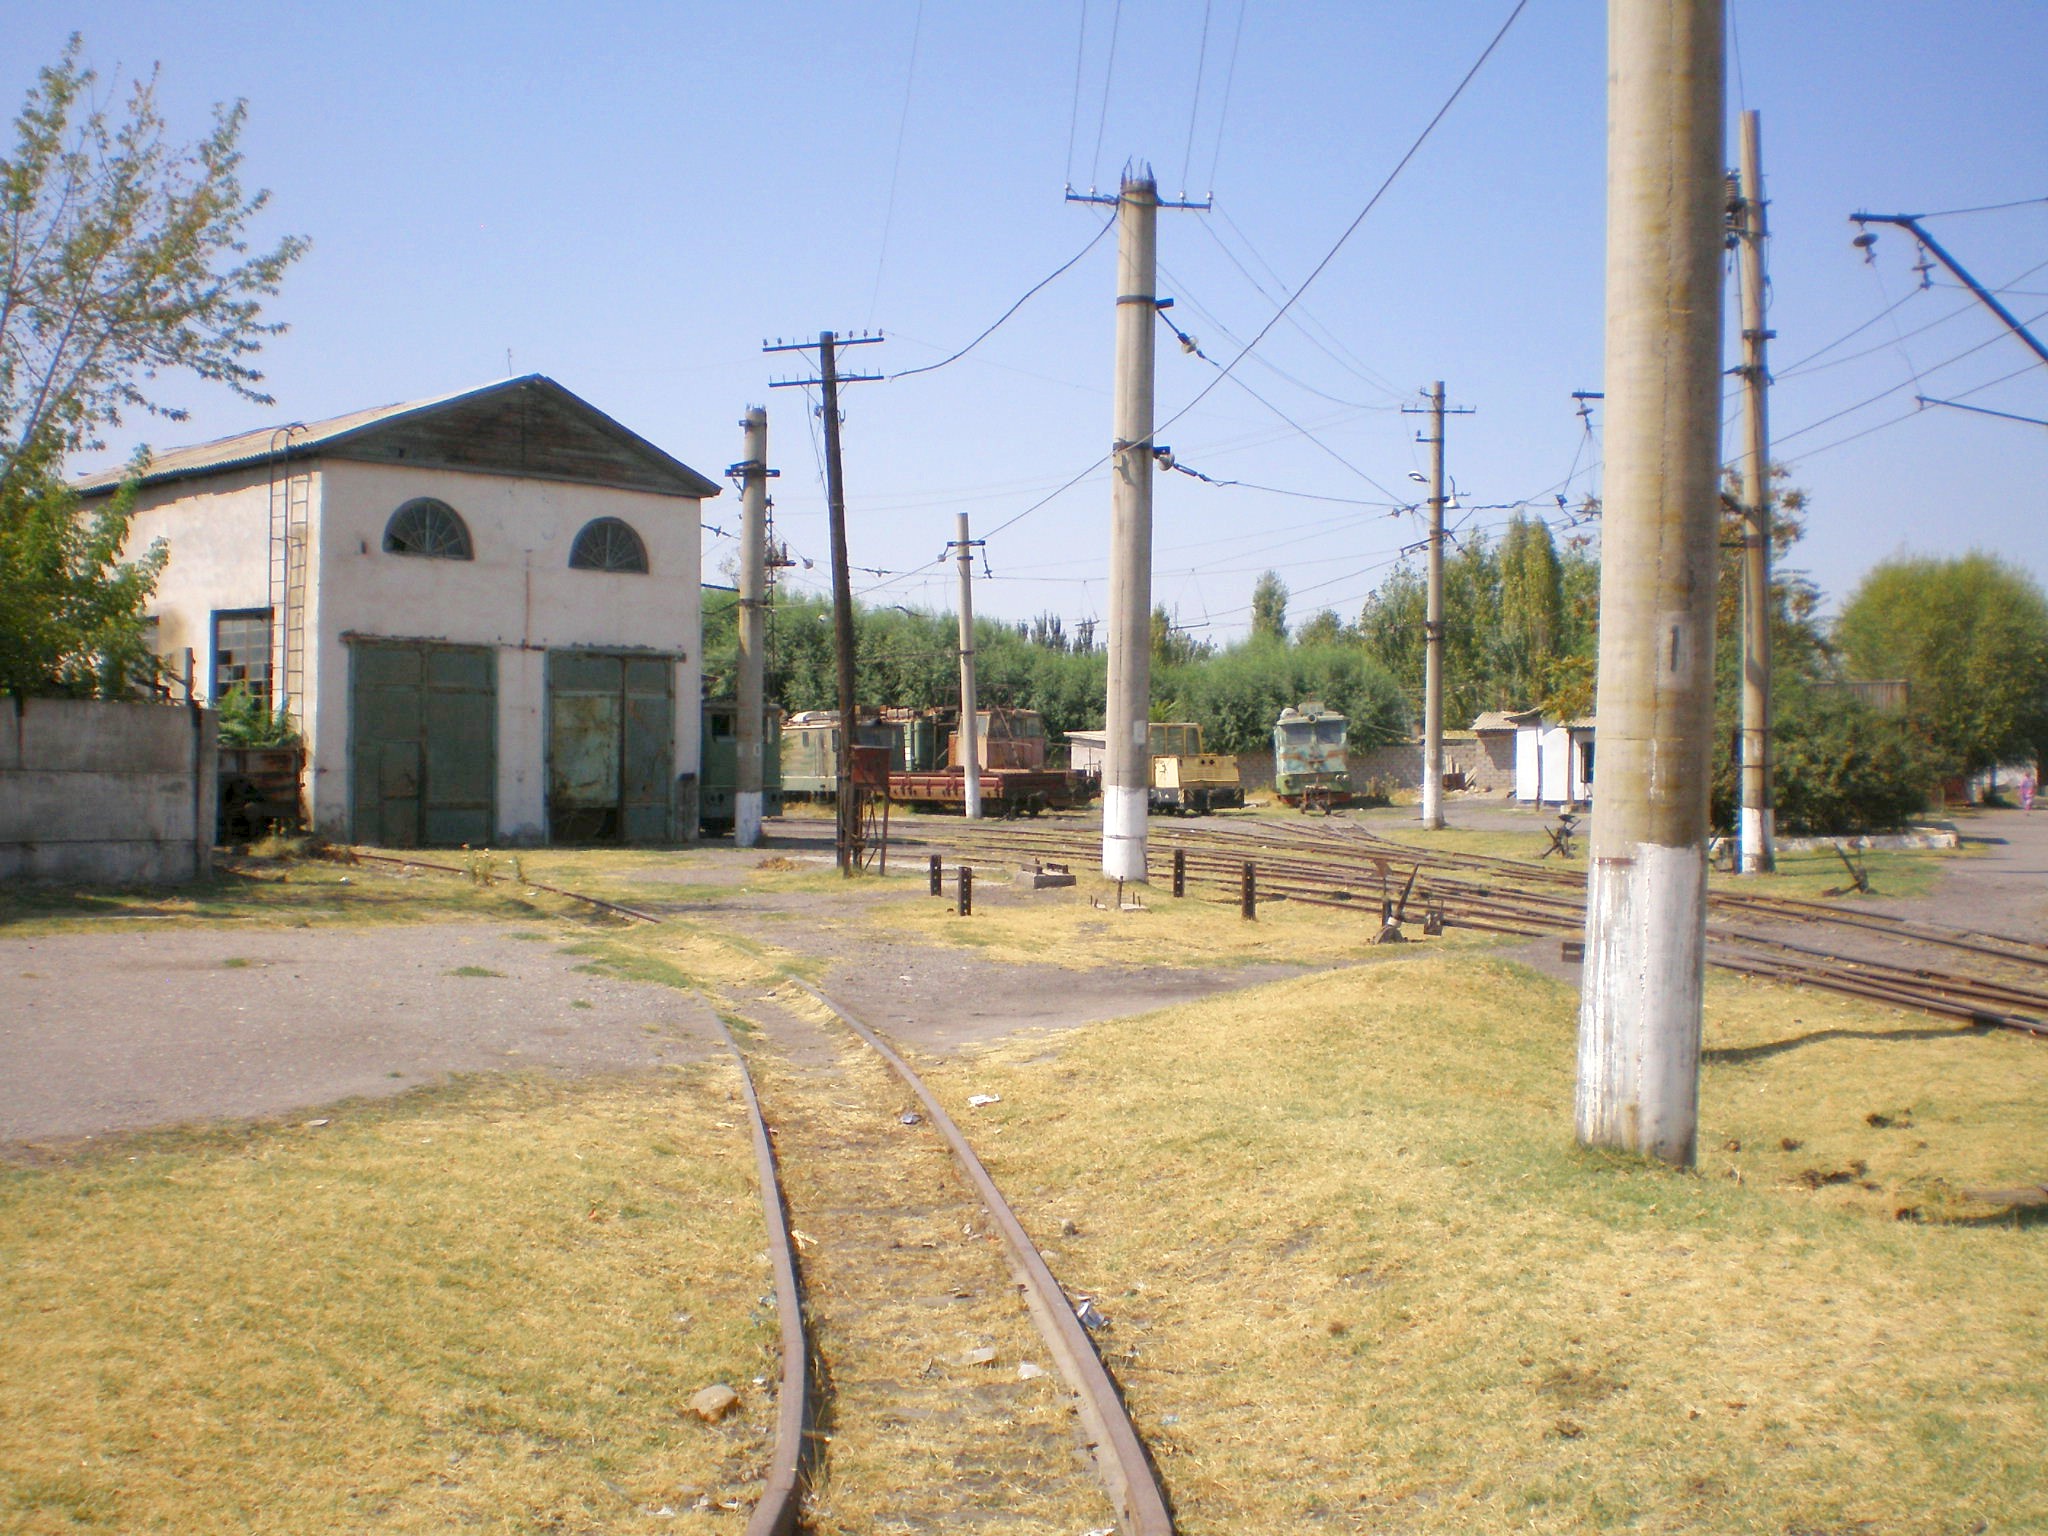 Сулюктинская узкоколейная железная дорога  —  фотографии, сделанные в 2008 году (часть 9)